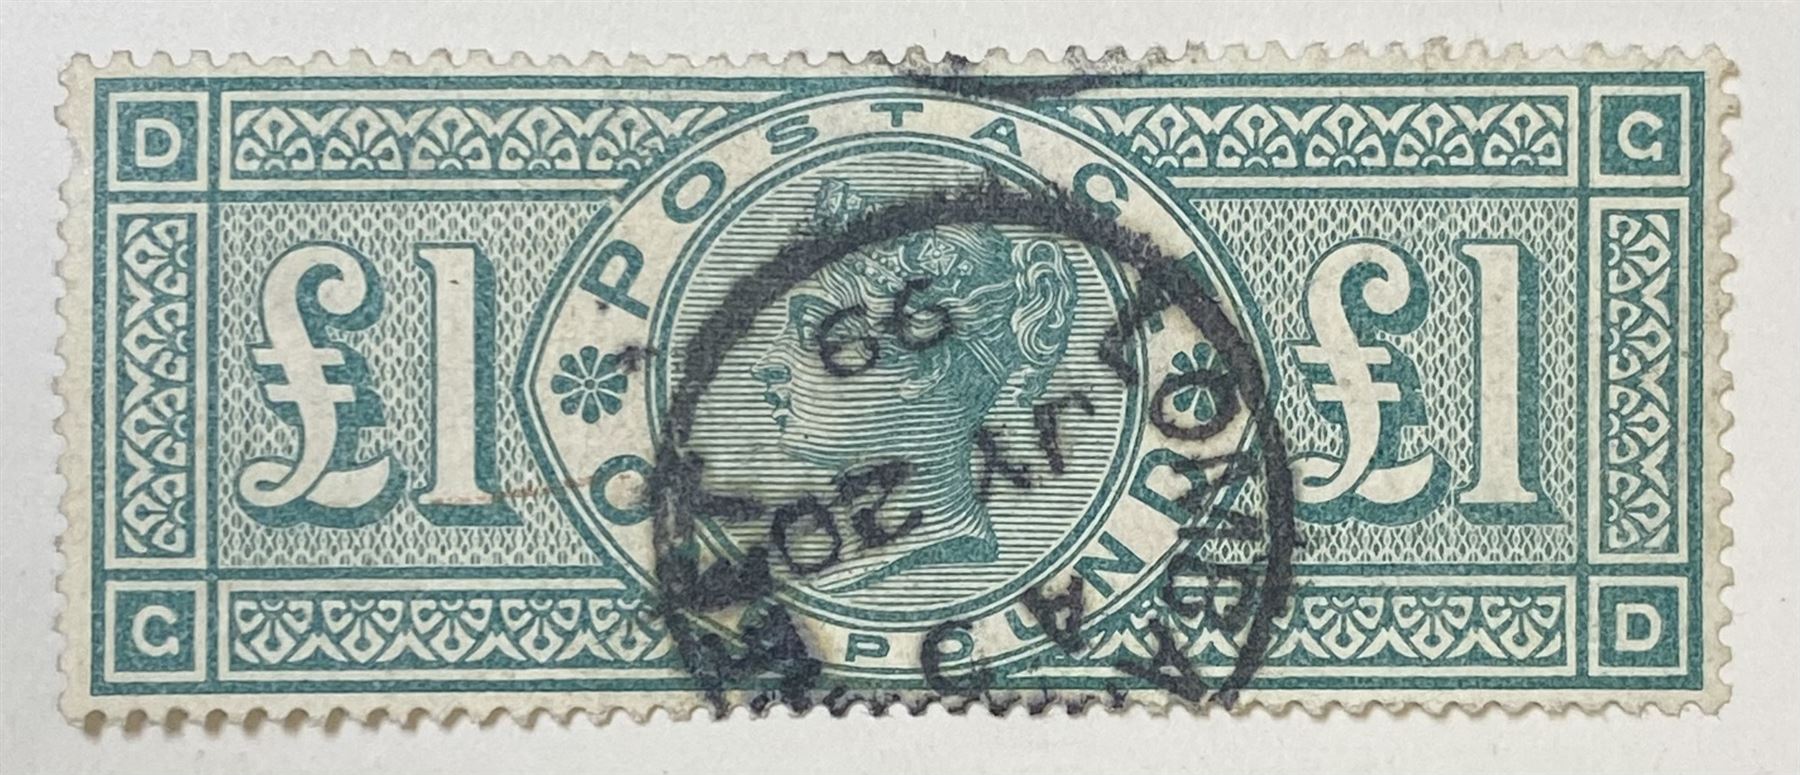 Great Britain Queen Victoria 1891 one pound green stamp